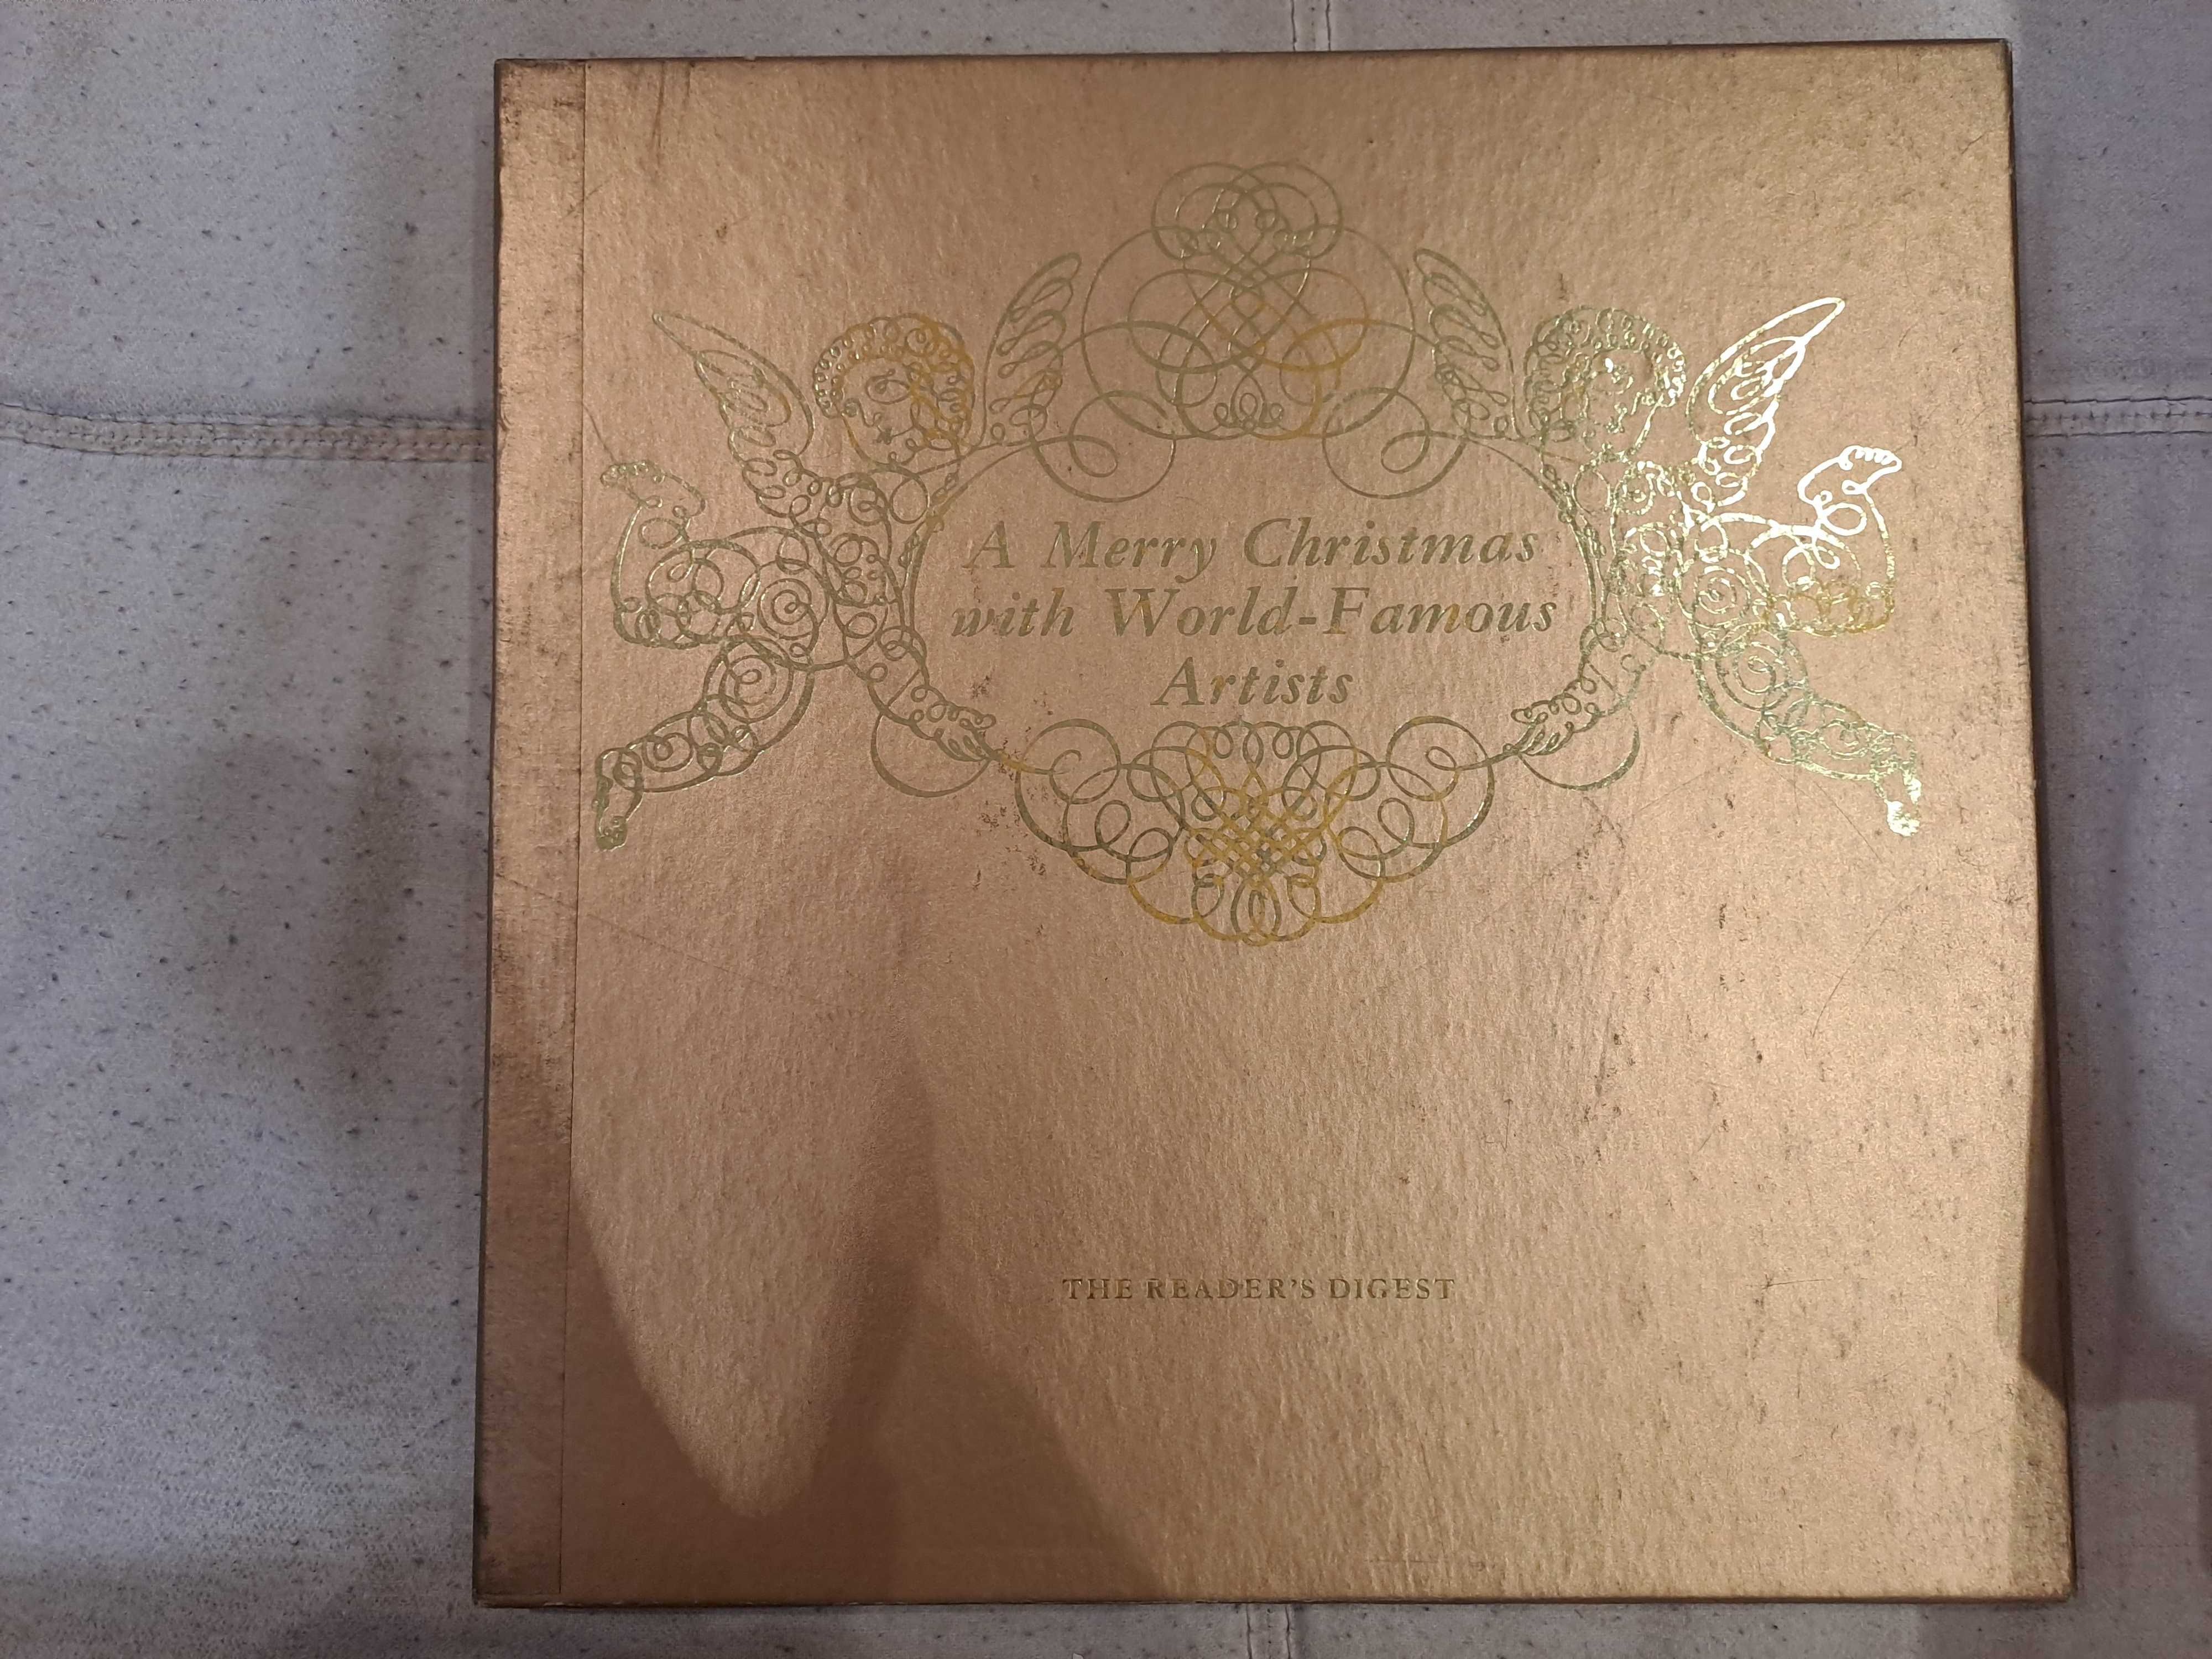 Vinis "A Merry Christmas with World Famous Artists" - Edição 1967